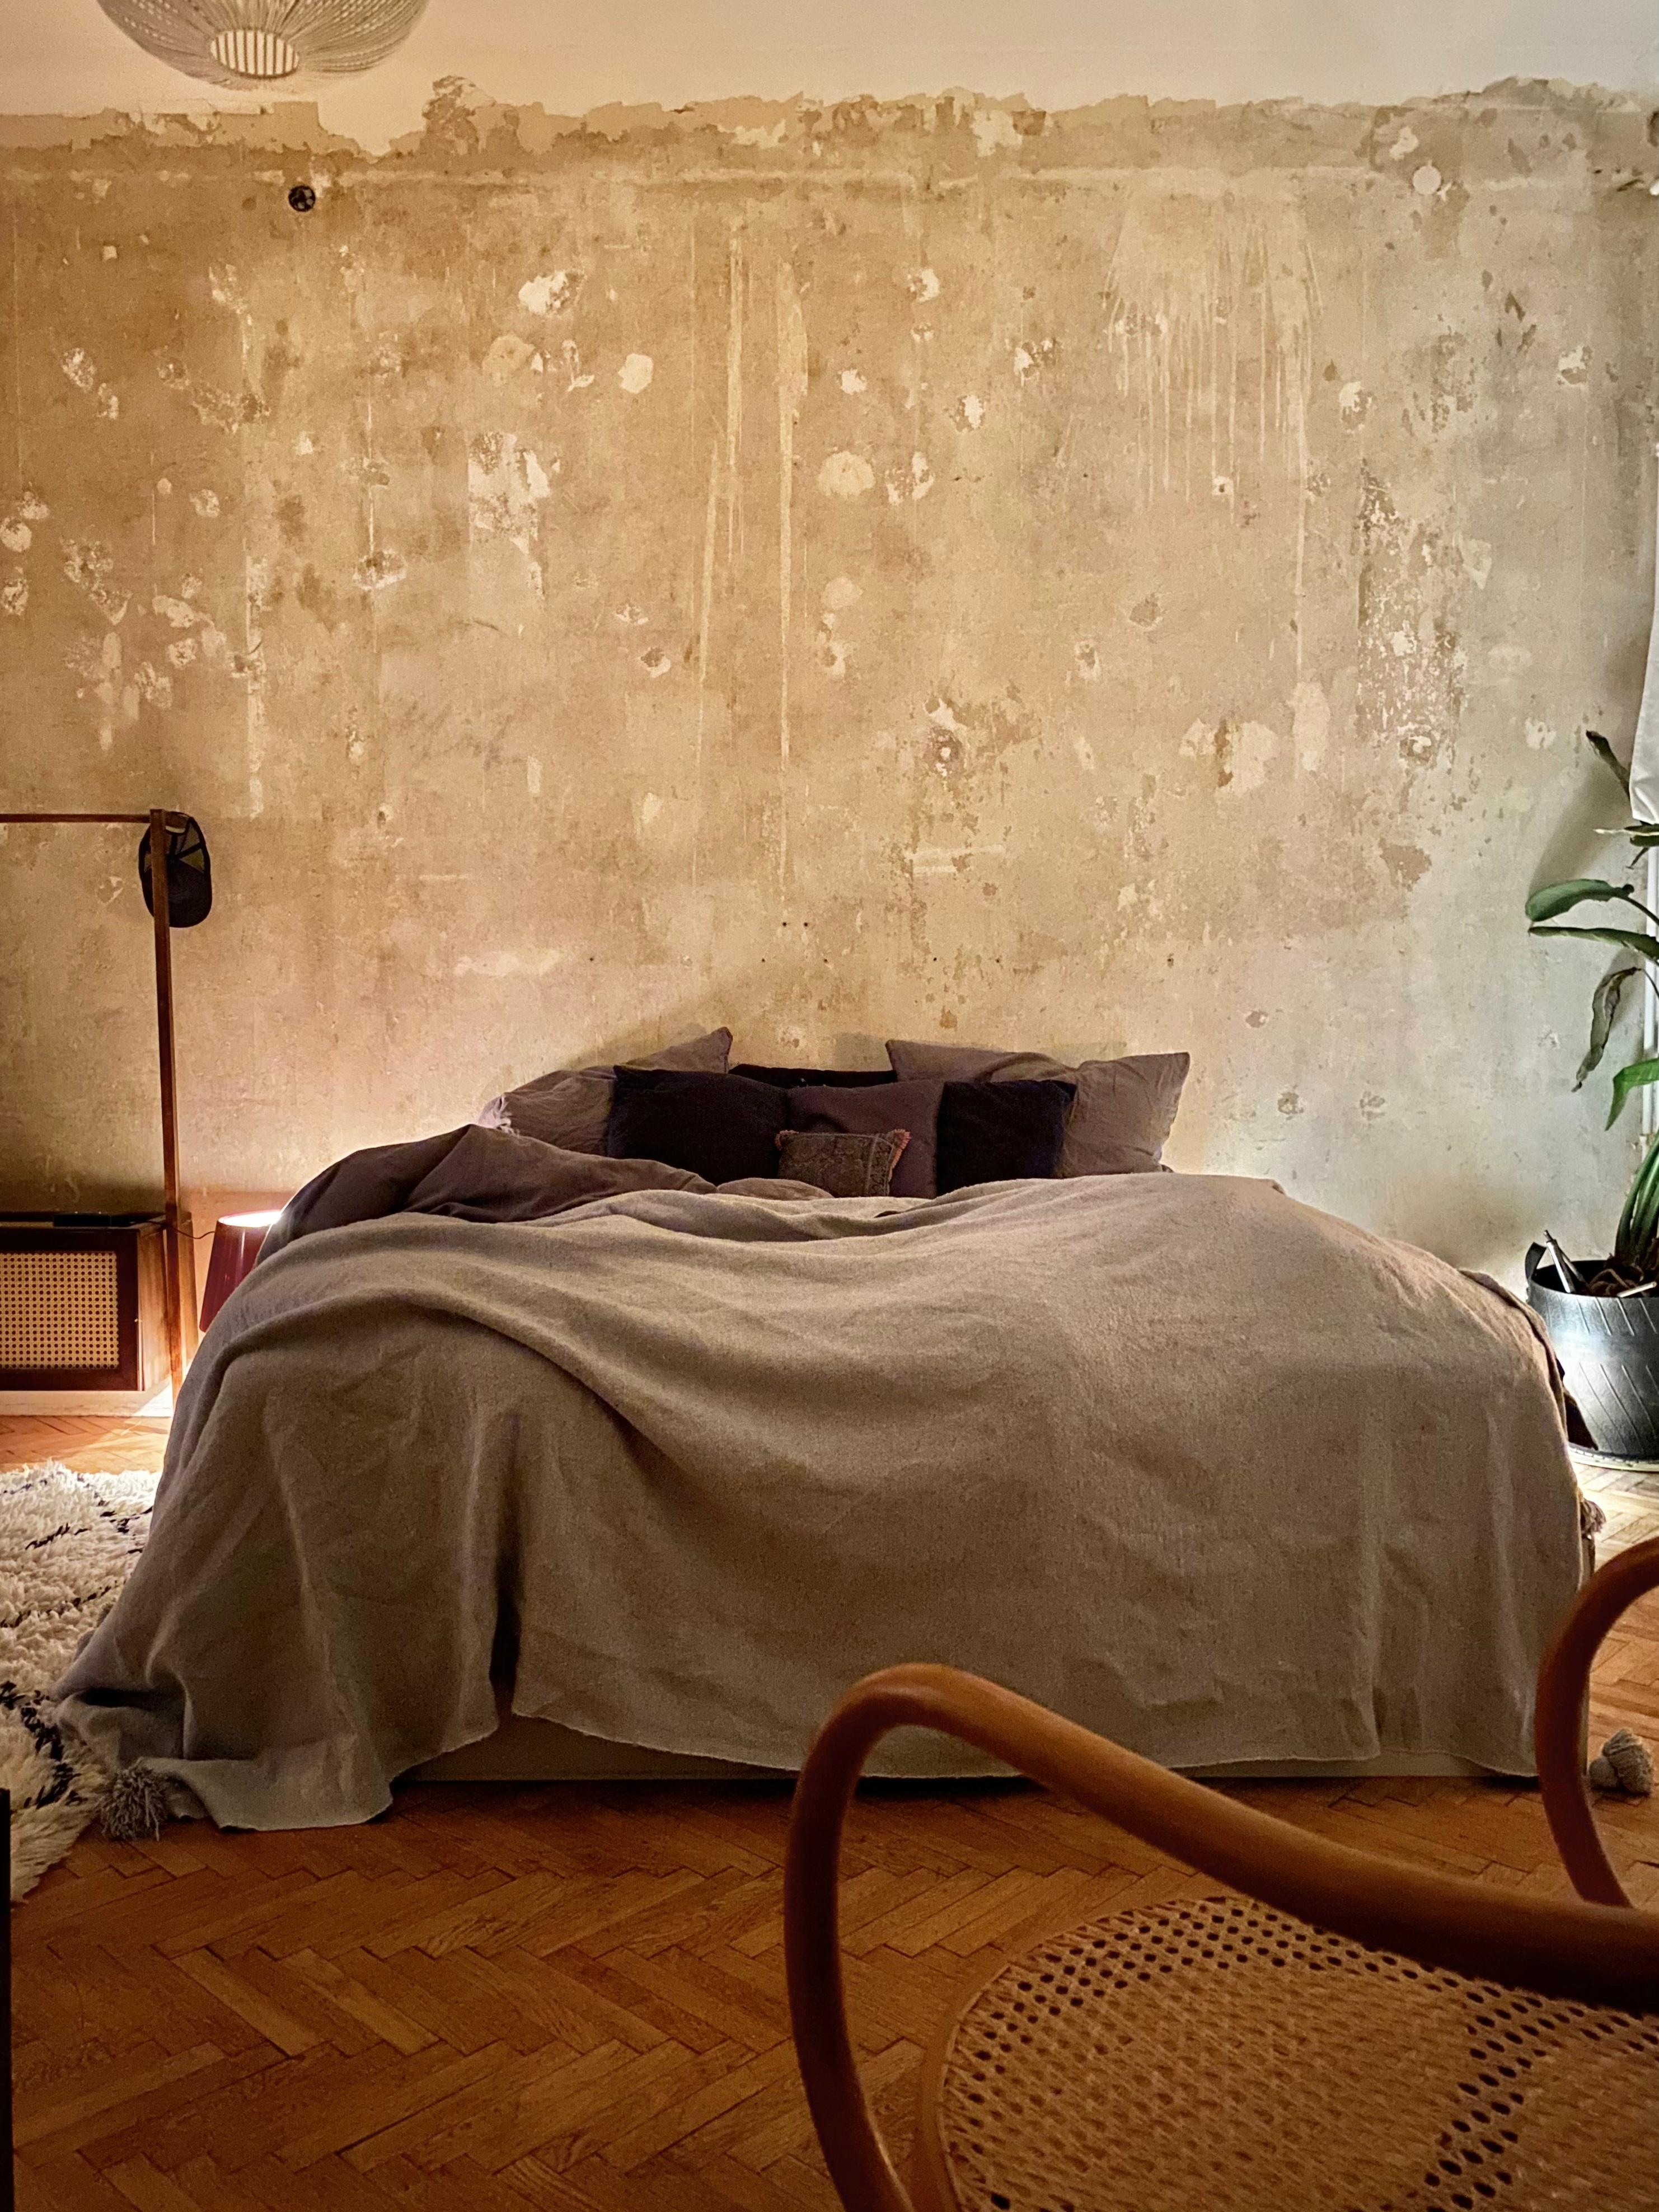 Schlafzimmerwand in progress no. 2! ⭐️♥️ #Schlafzimmer #bett #kerzen #kamin #holzboden #renovierung